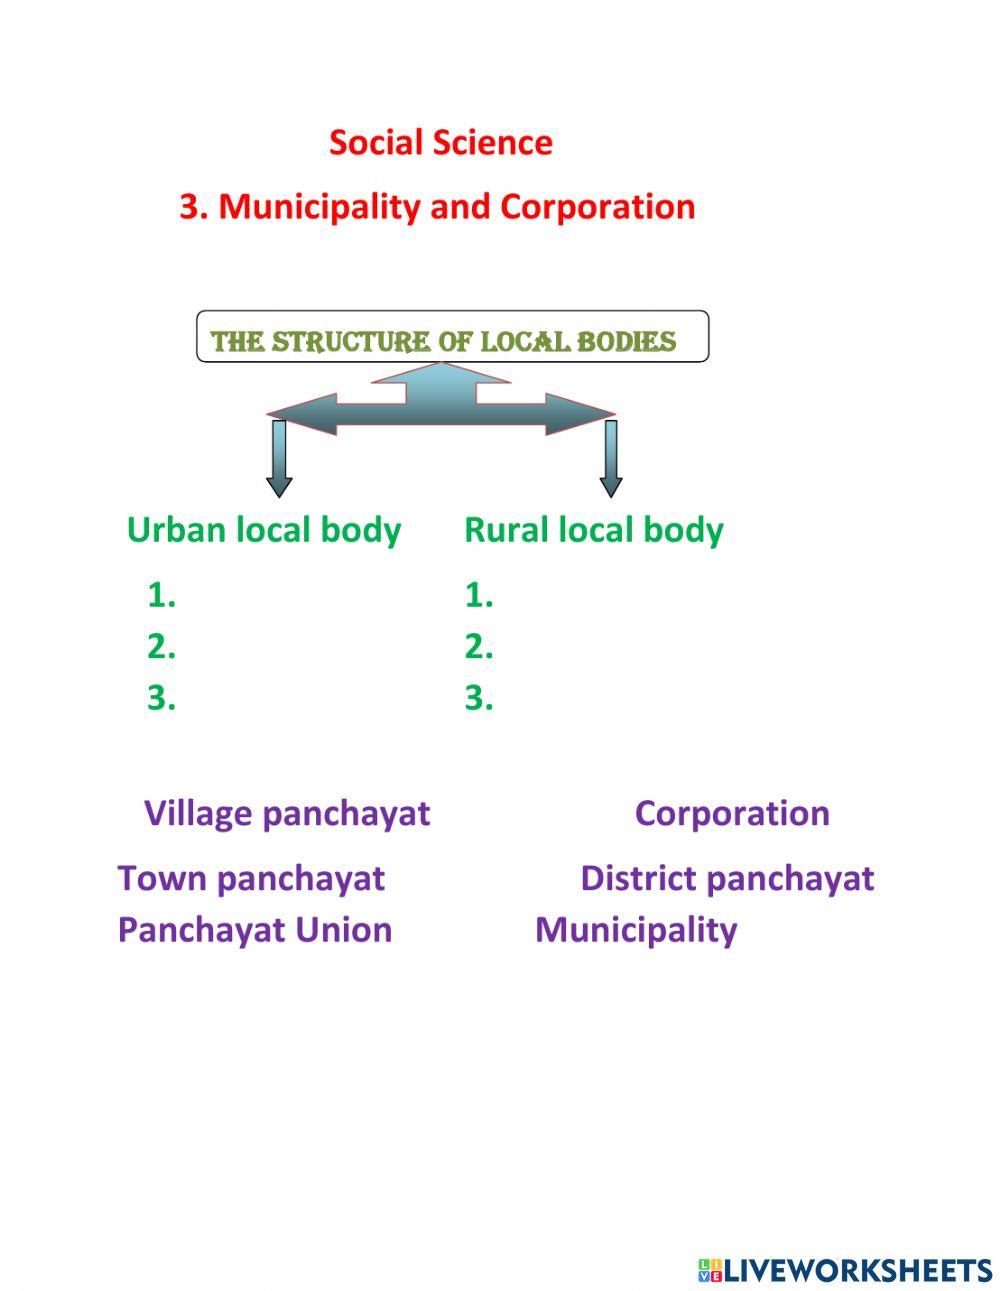 Municipality & Corporation